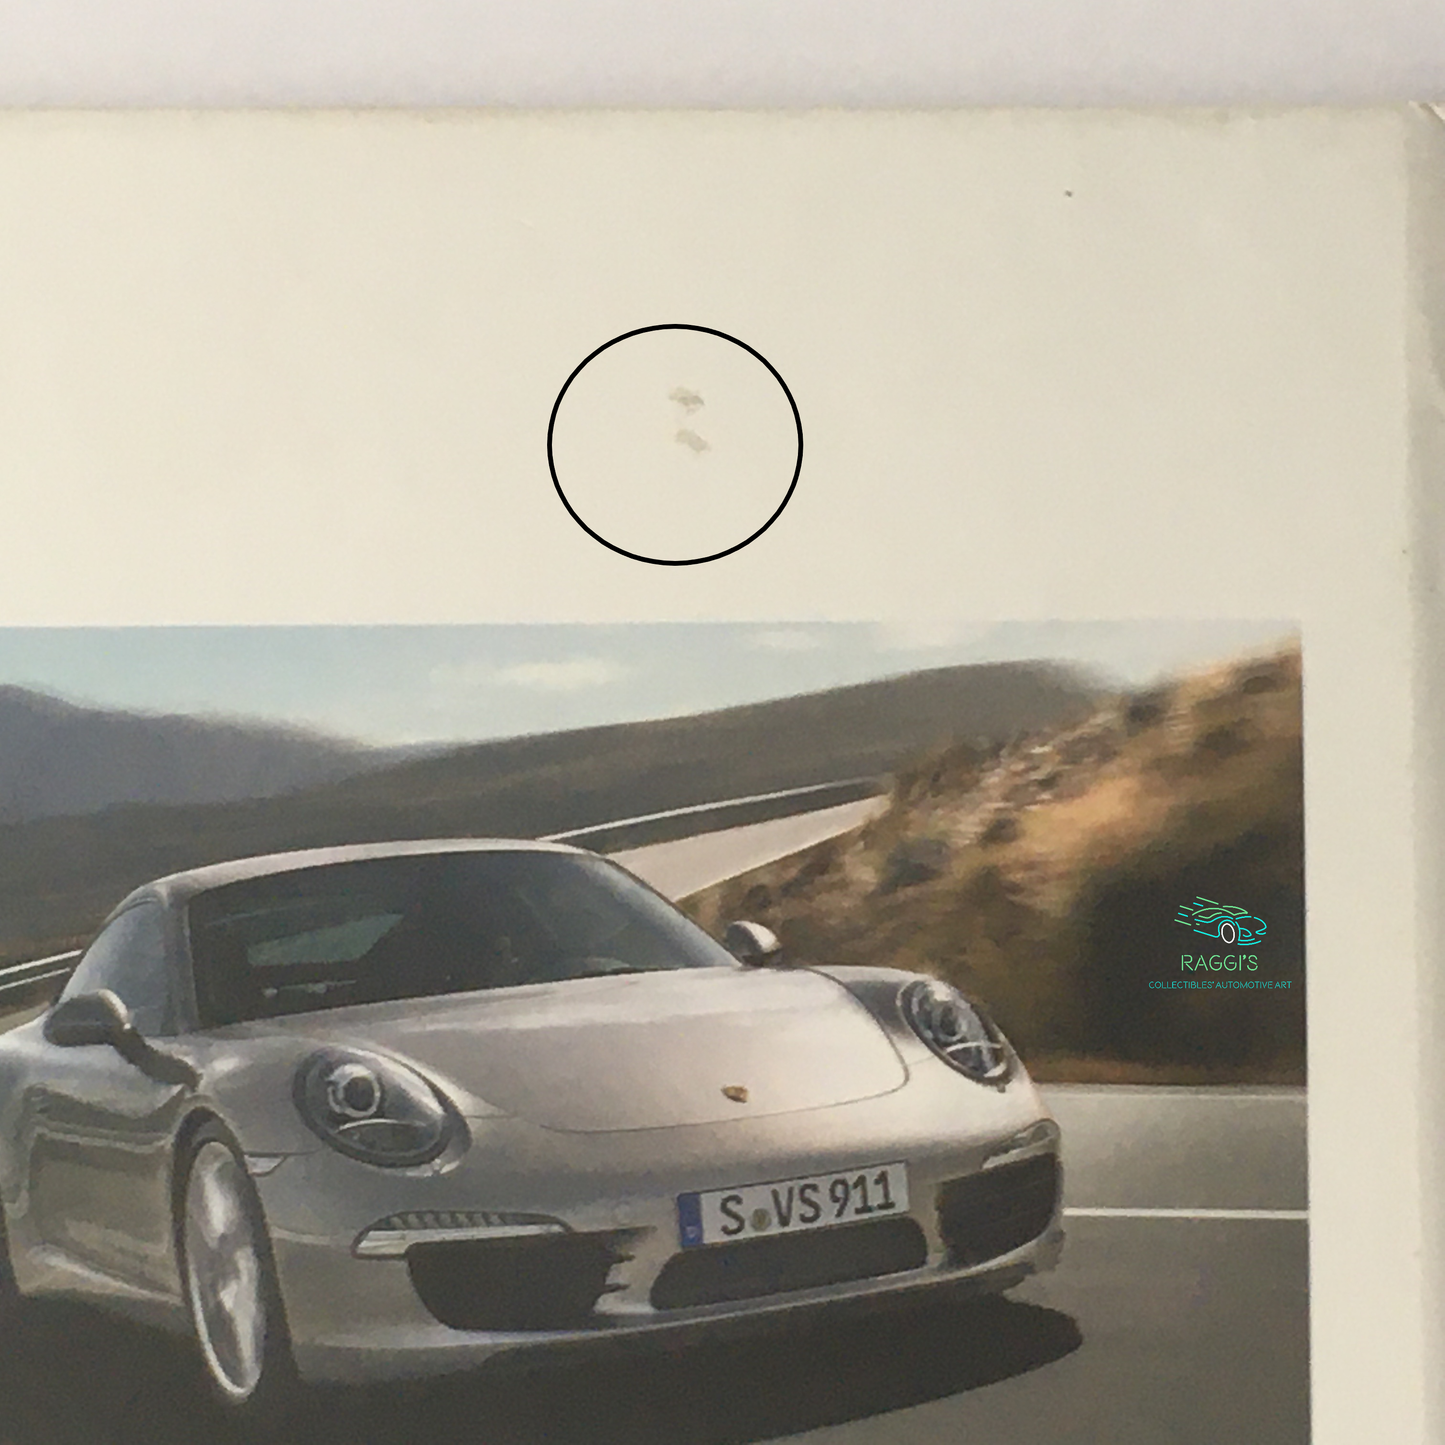 Porsche, Brochure Leaflet Porsche 911 Series 991 Model Year 2011 French Language